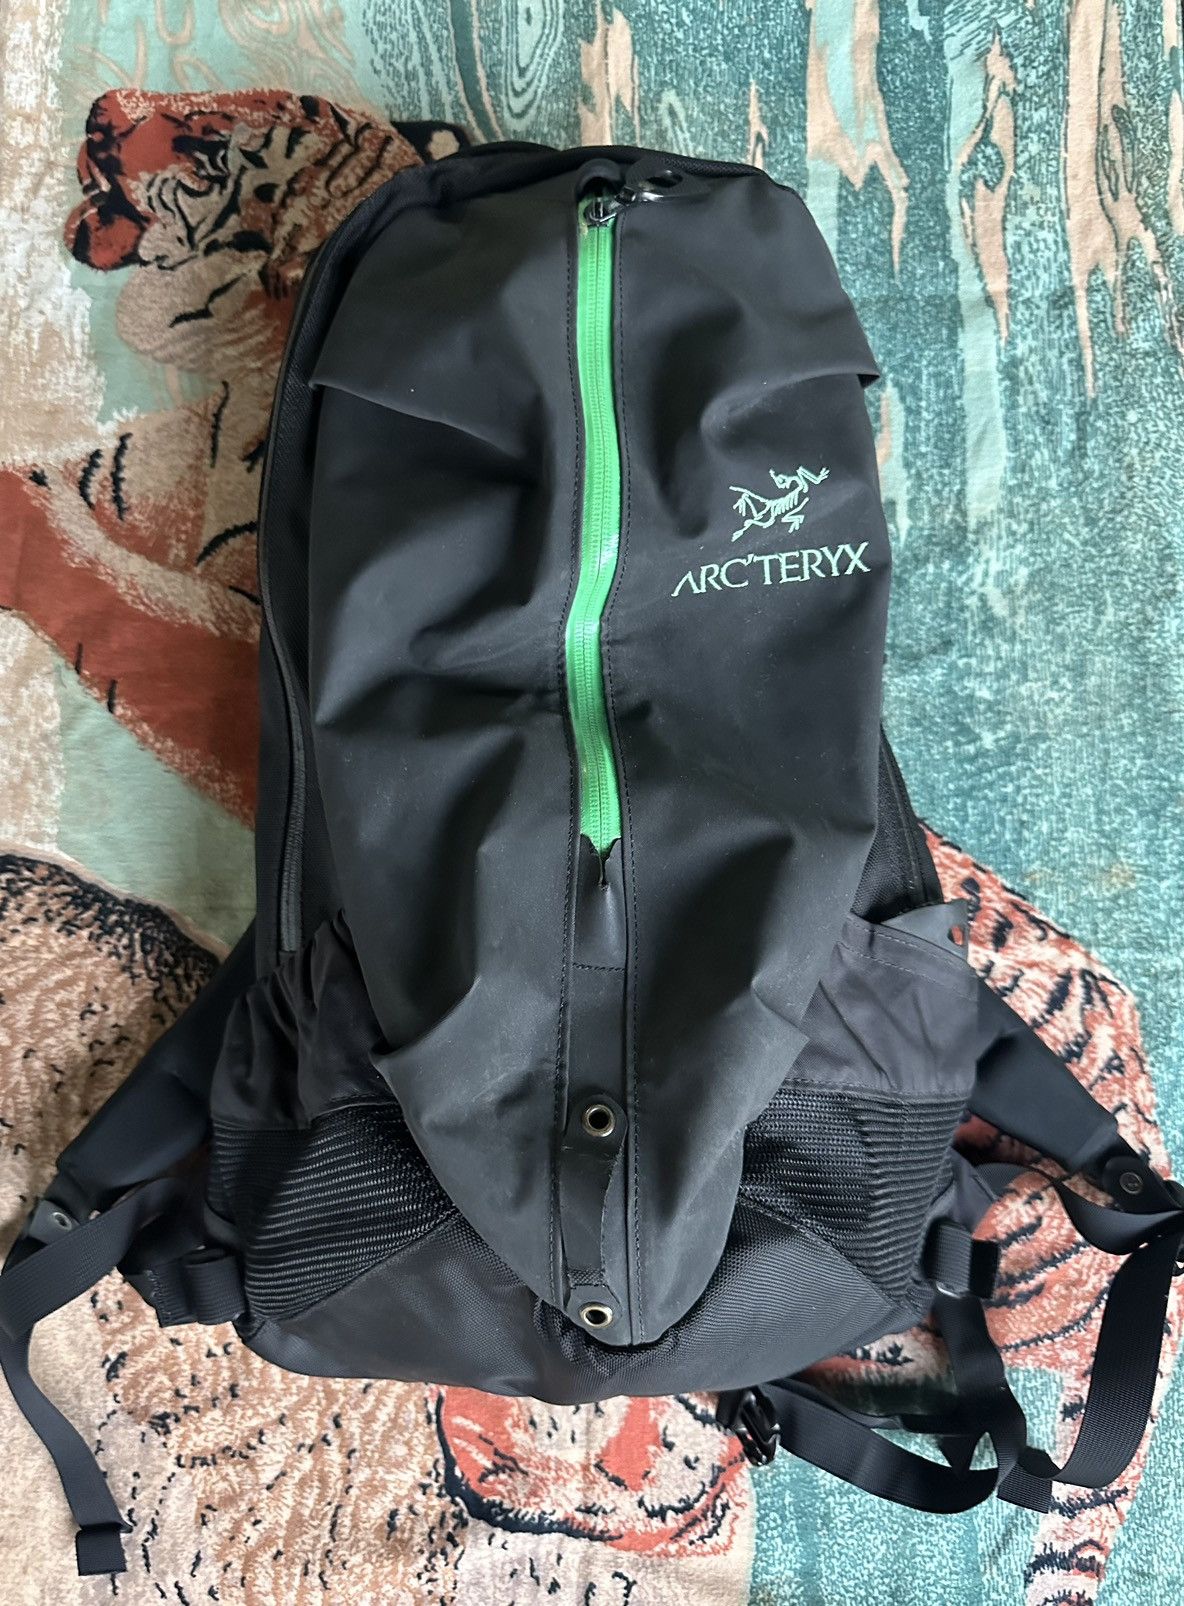 Arc'Teryx Arc'teryx Arro 22 stealth black/green backpack | Grailed